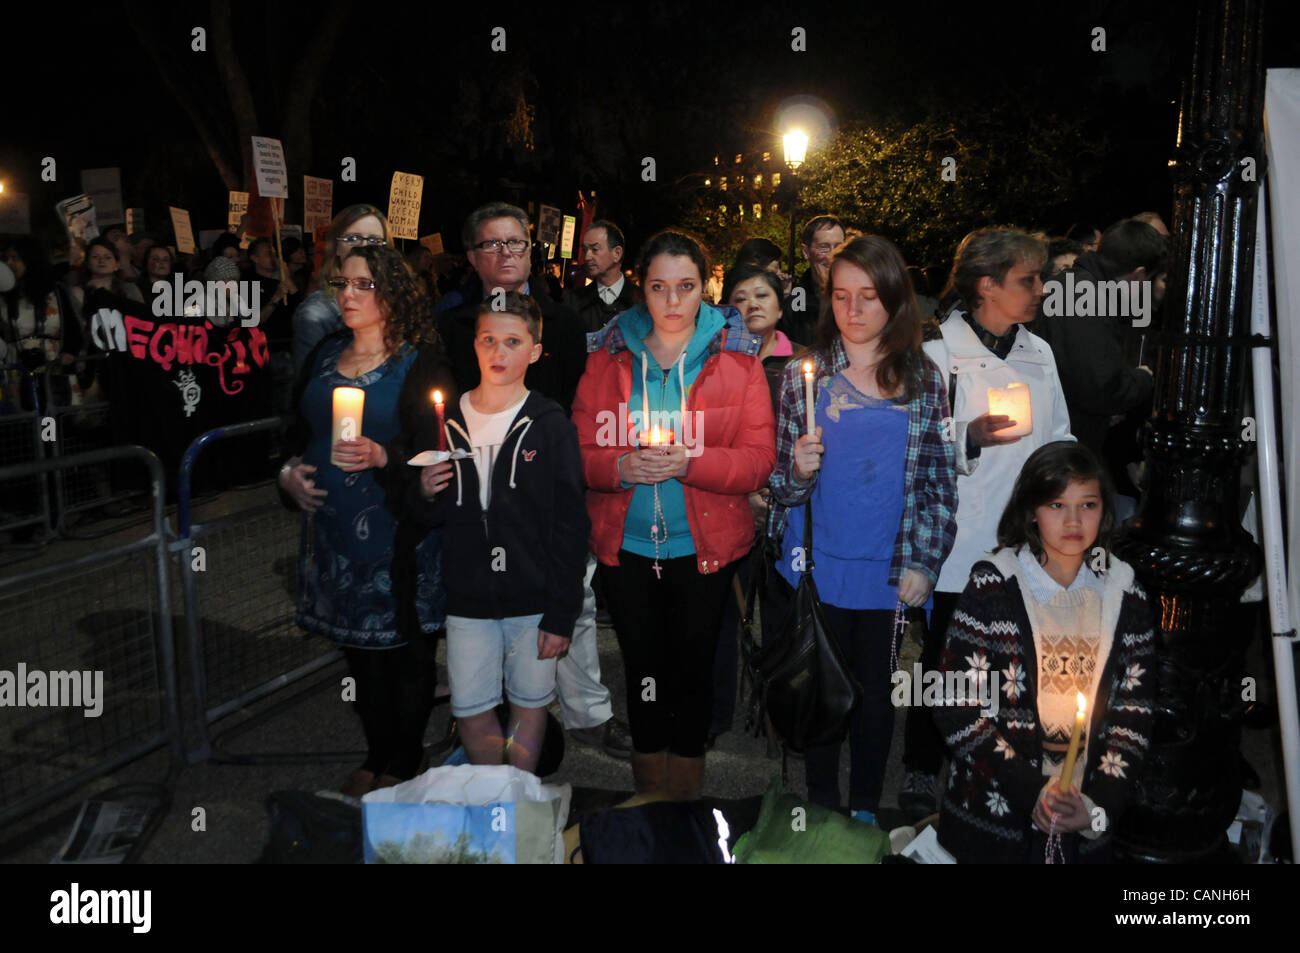 London, UK. 30.03.12. Christlichen Pro-Life und Anti-Abtreibungs-Aktivisten statt Gebete und Proteste außerhalb der britischen Schwangerschaft Beratung in Bedford Square. Pro-Wahl Aktivisten demonstrierten die Zähler in der Nähe. Stockfoto